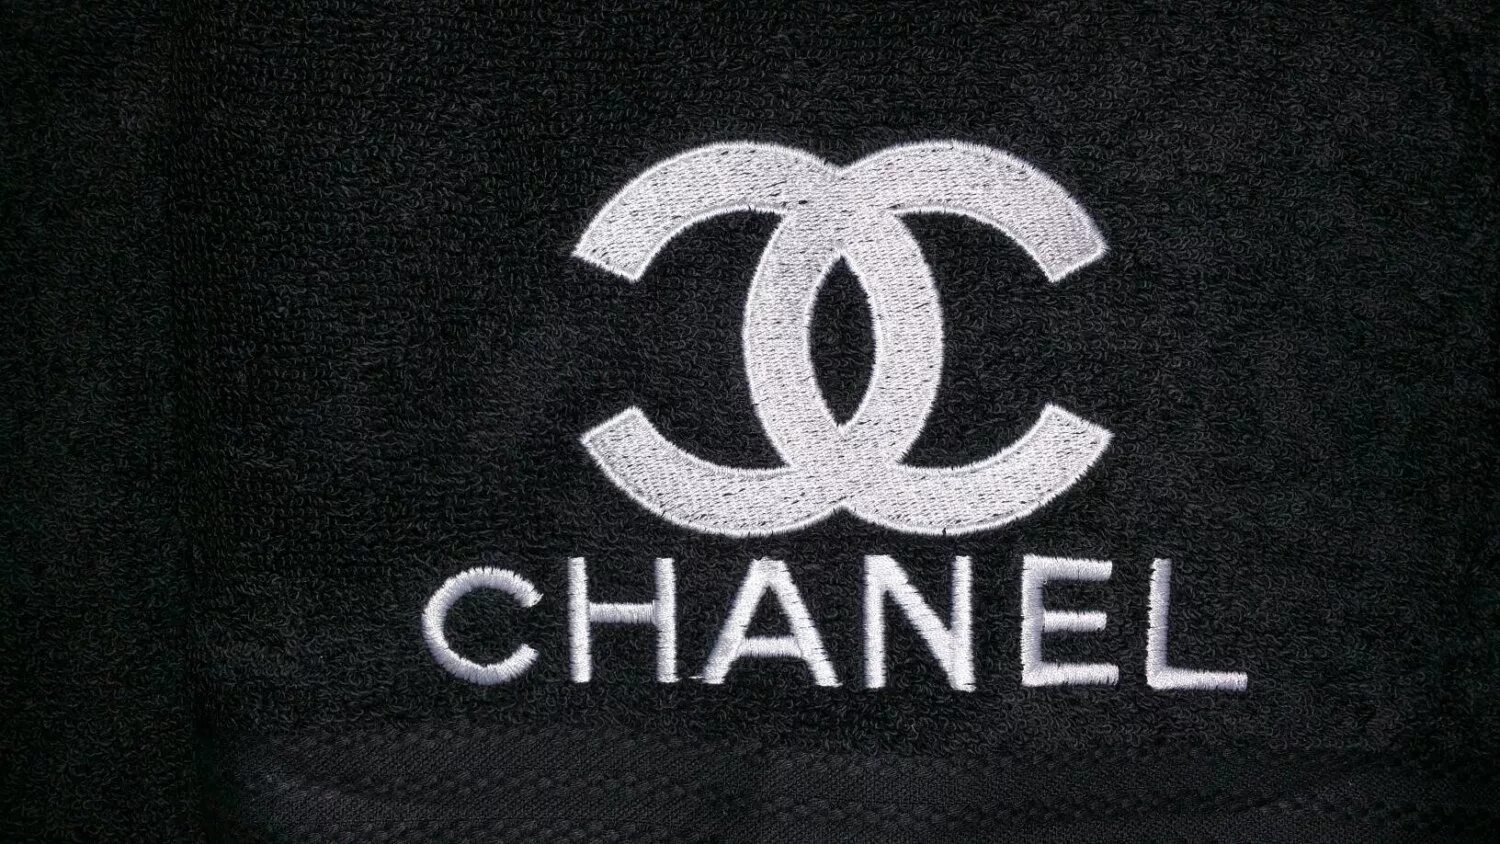 Лого на одежде. Значок Шанель. Брендовые эмблемы. Chanel бренд одежды. Фирменный знак Шанель.